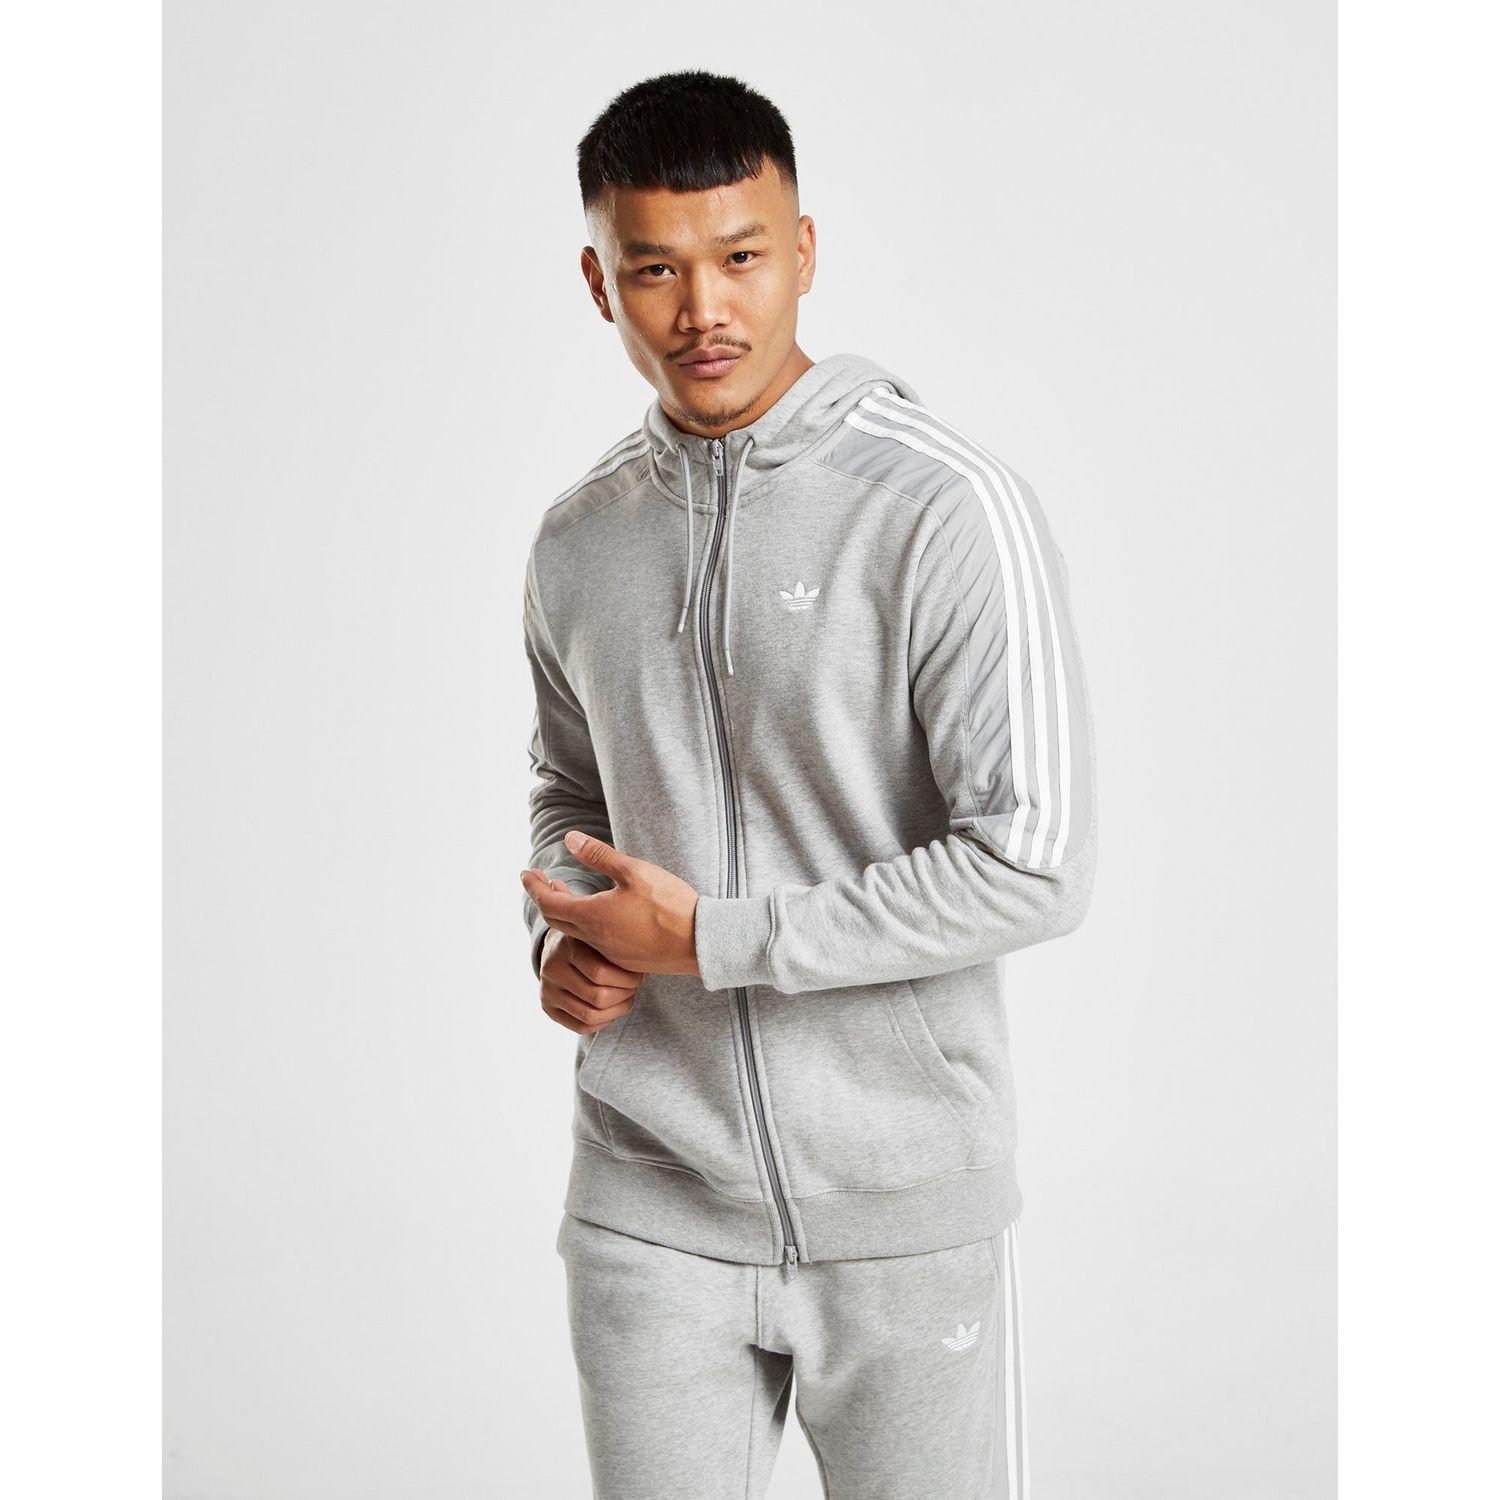 adidas Originals Cotton Radkin Full Zip Hoodie in Grey (Gray) for Men - Lyst